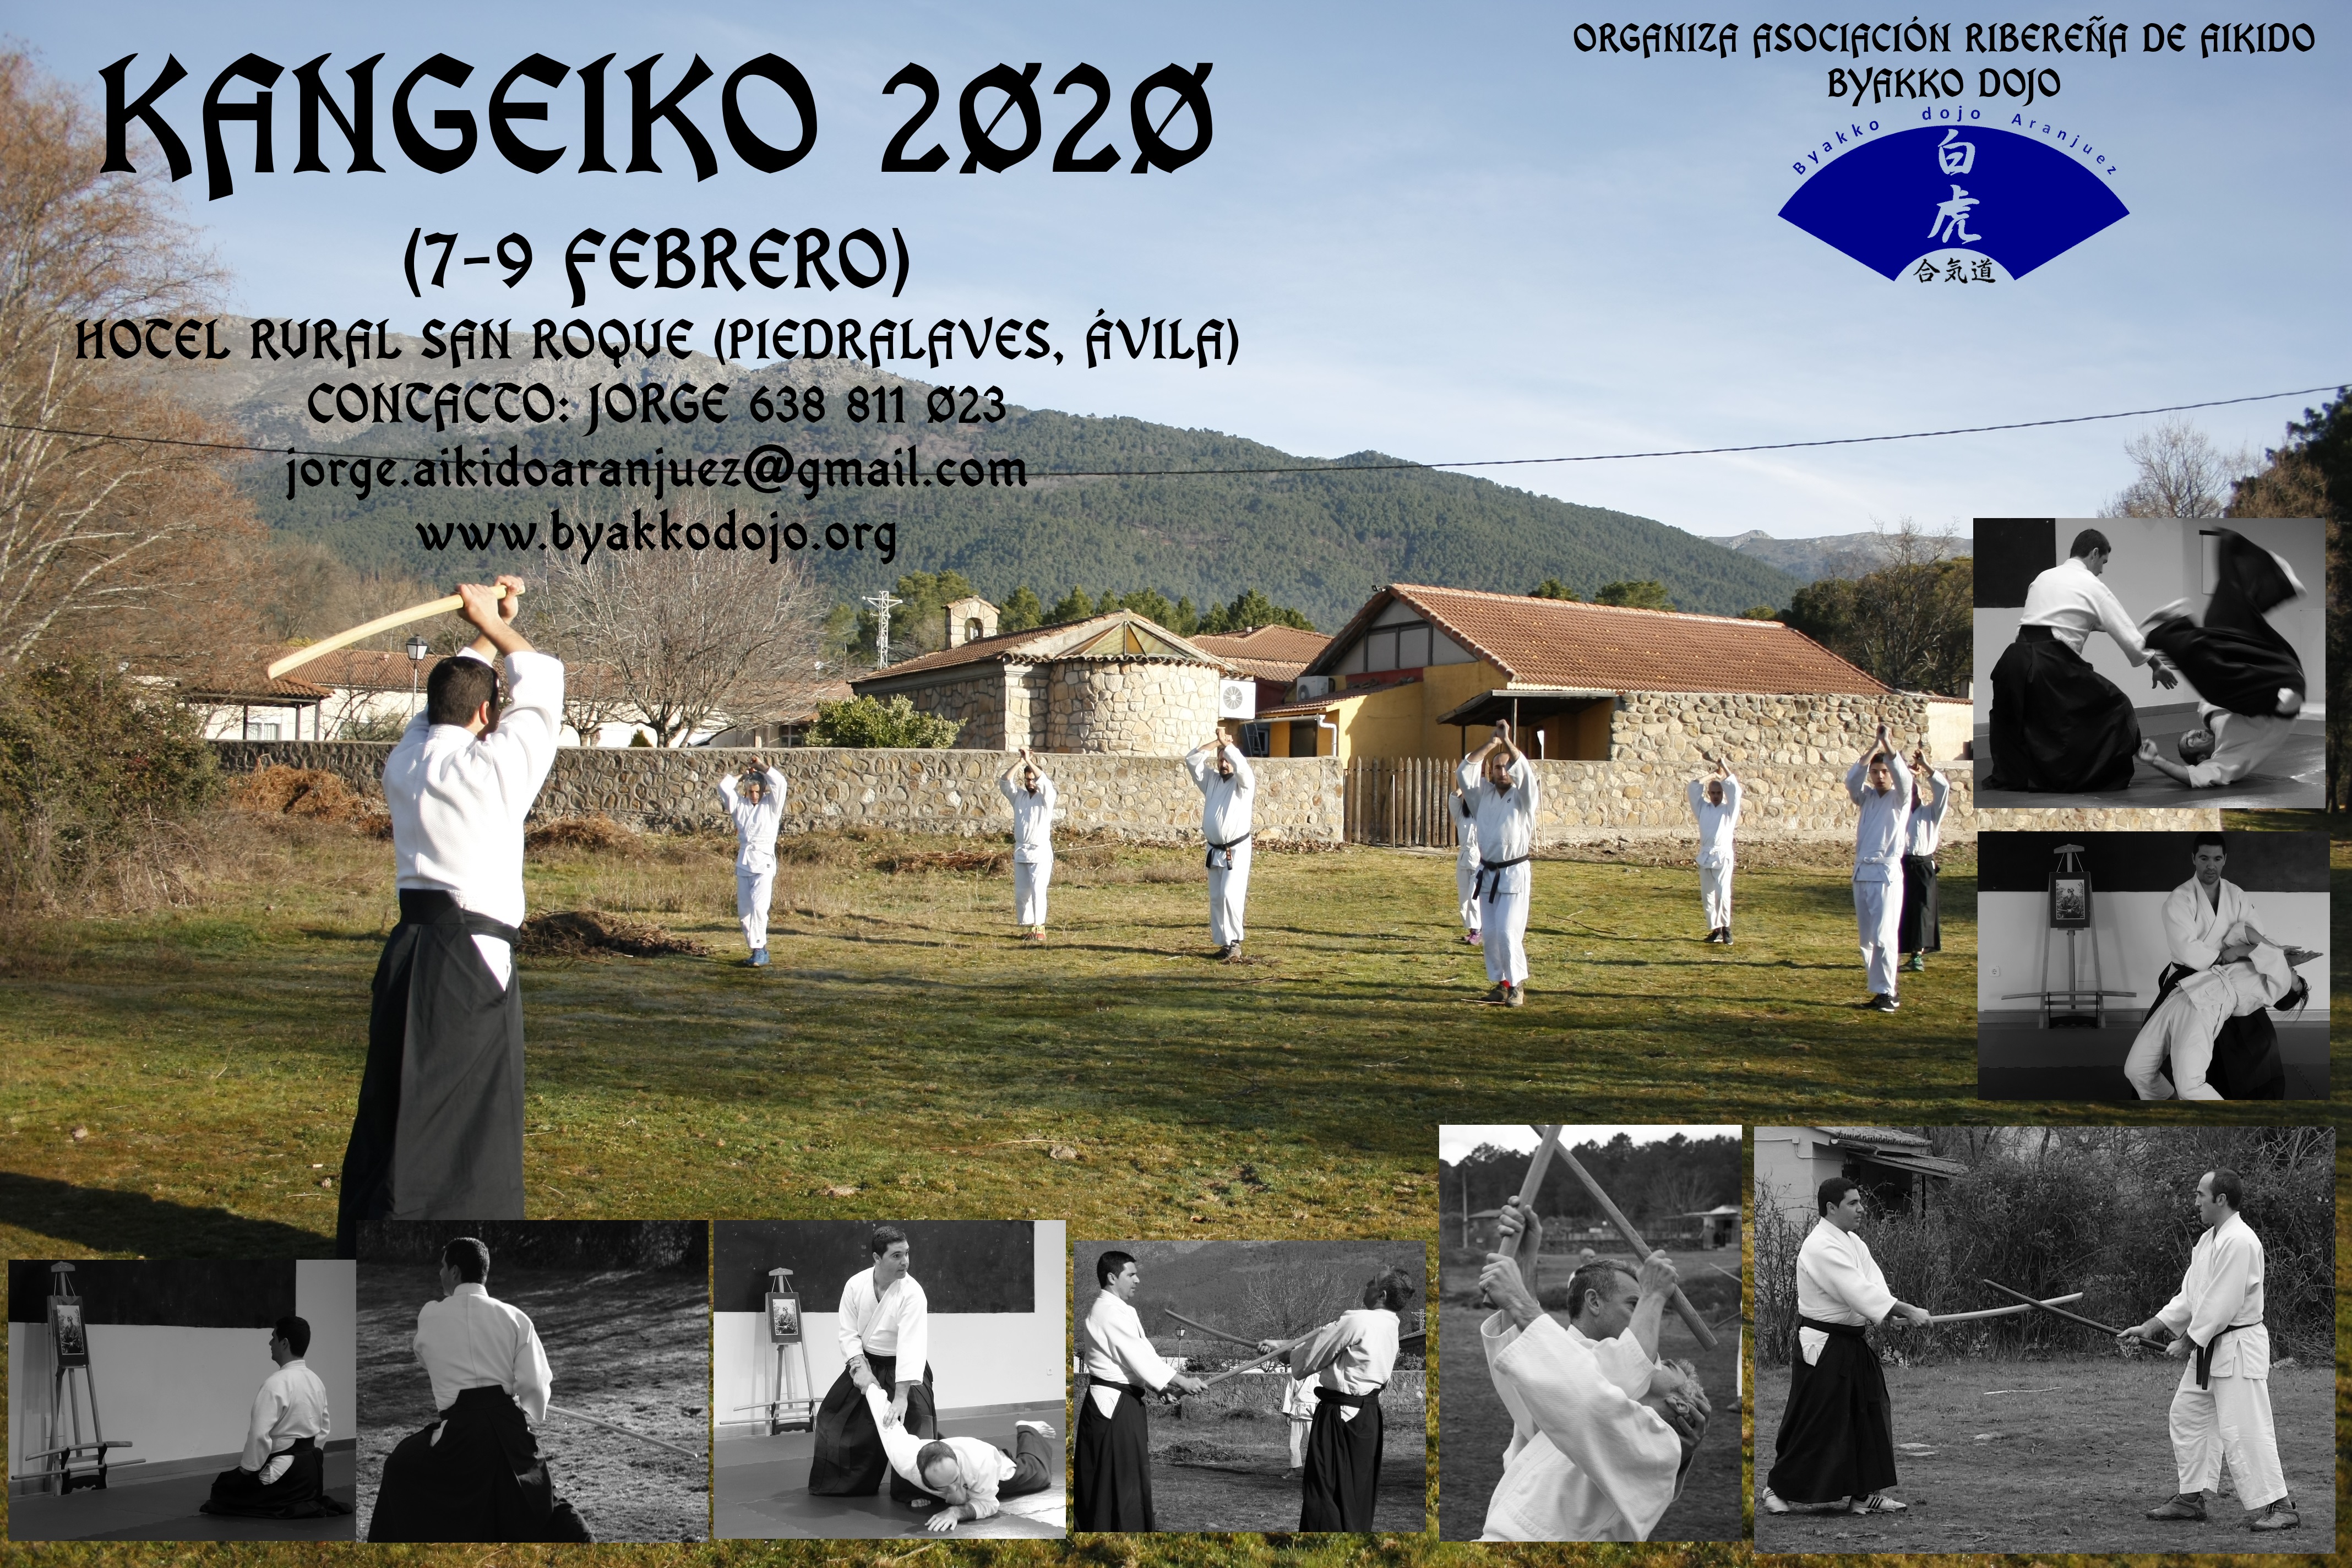 Fotos Kangeiko 2020